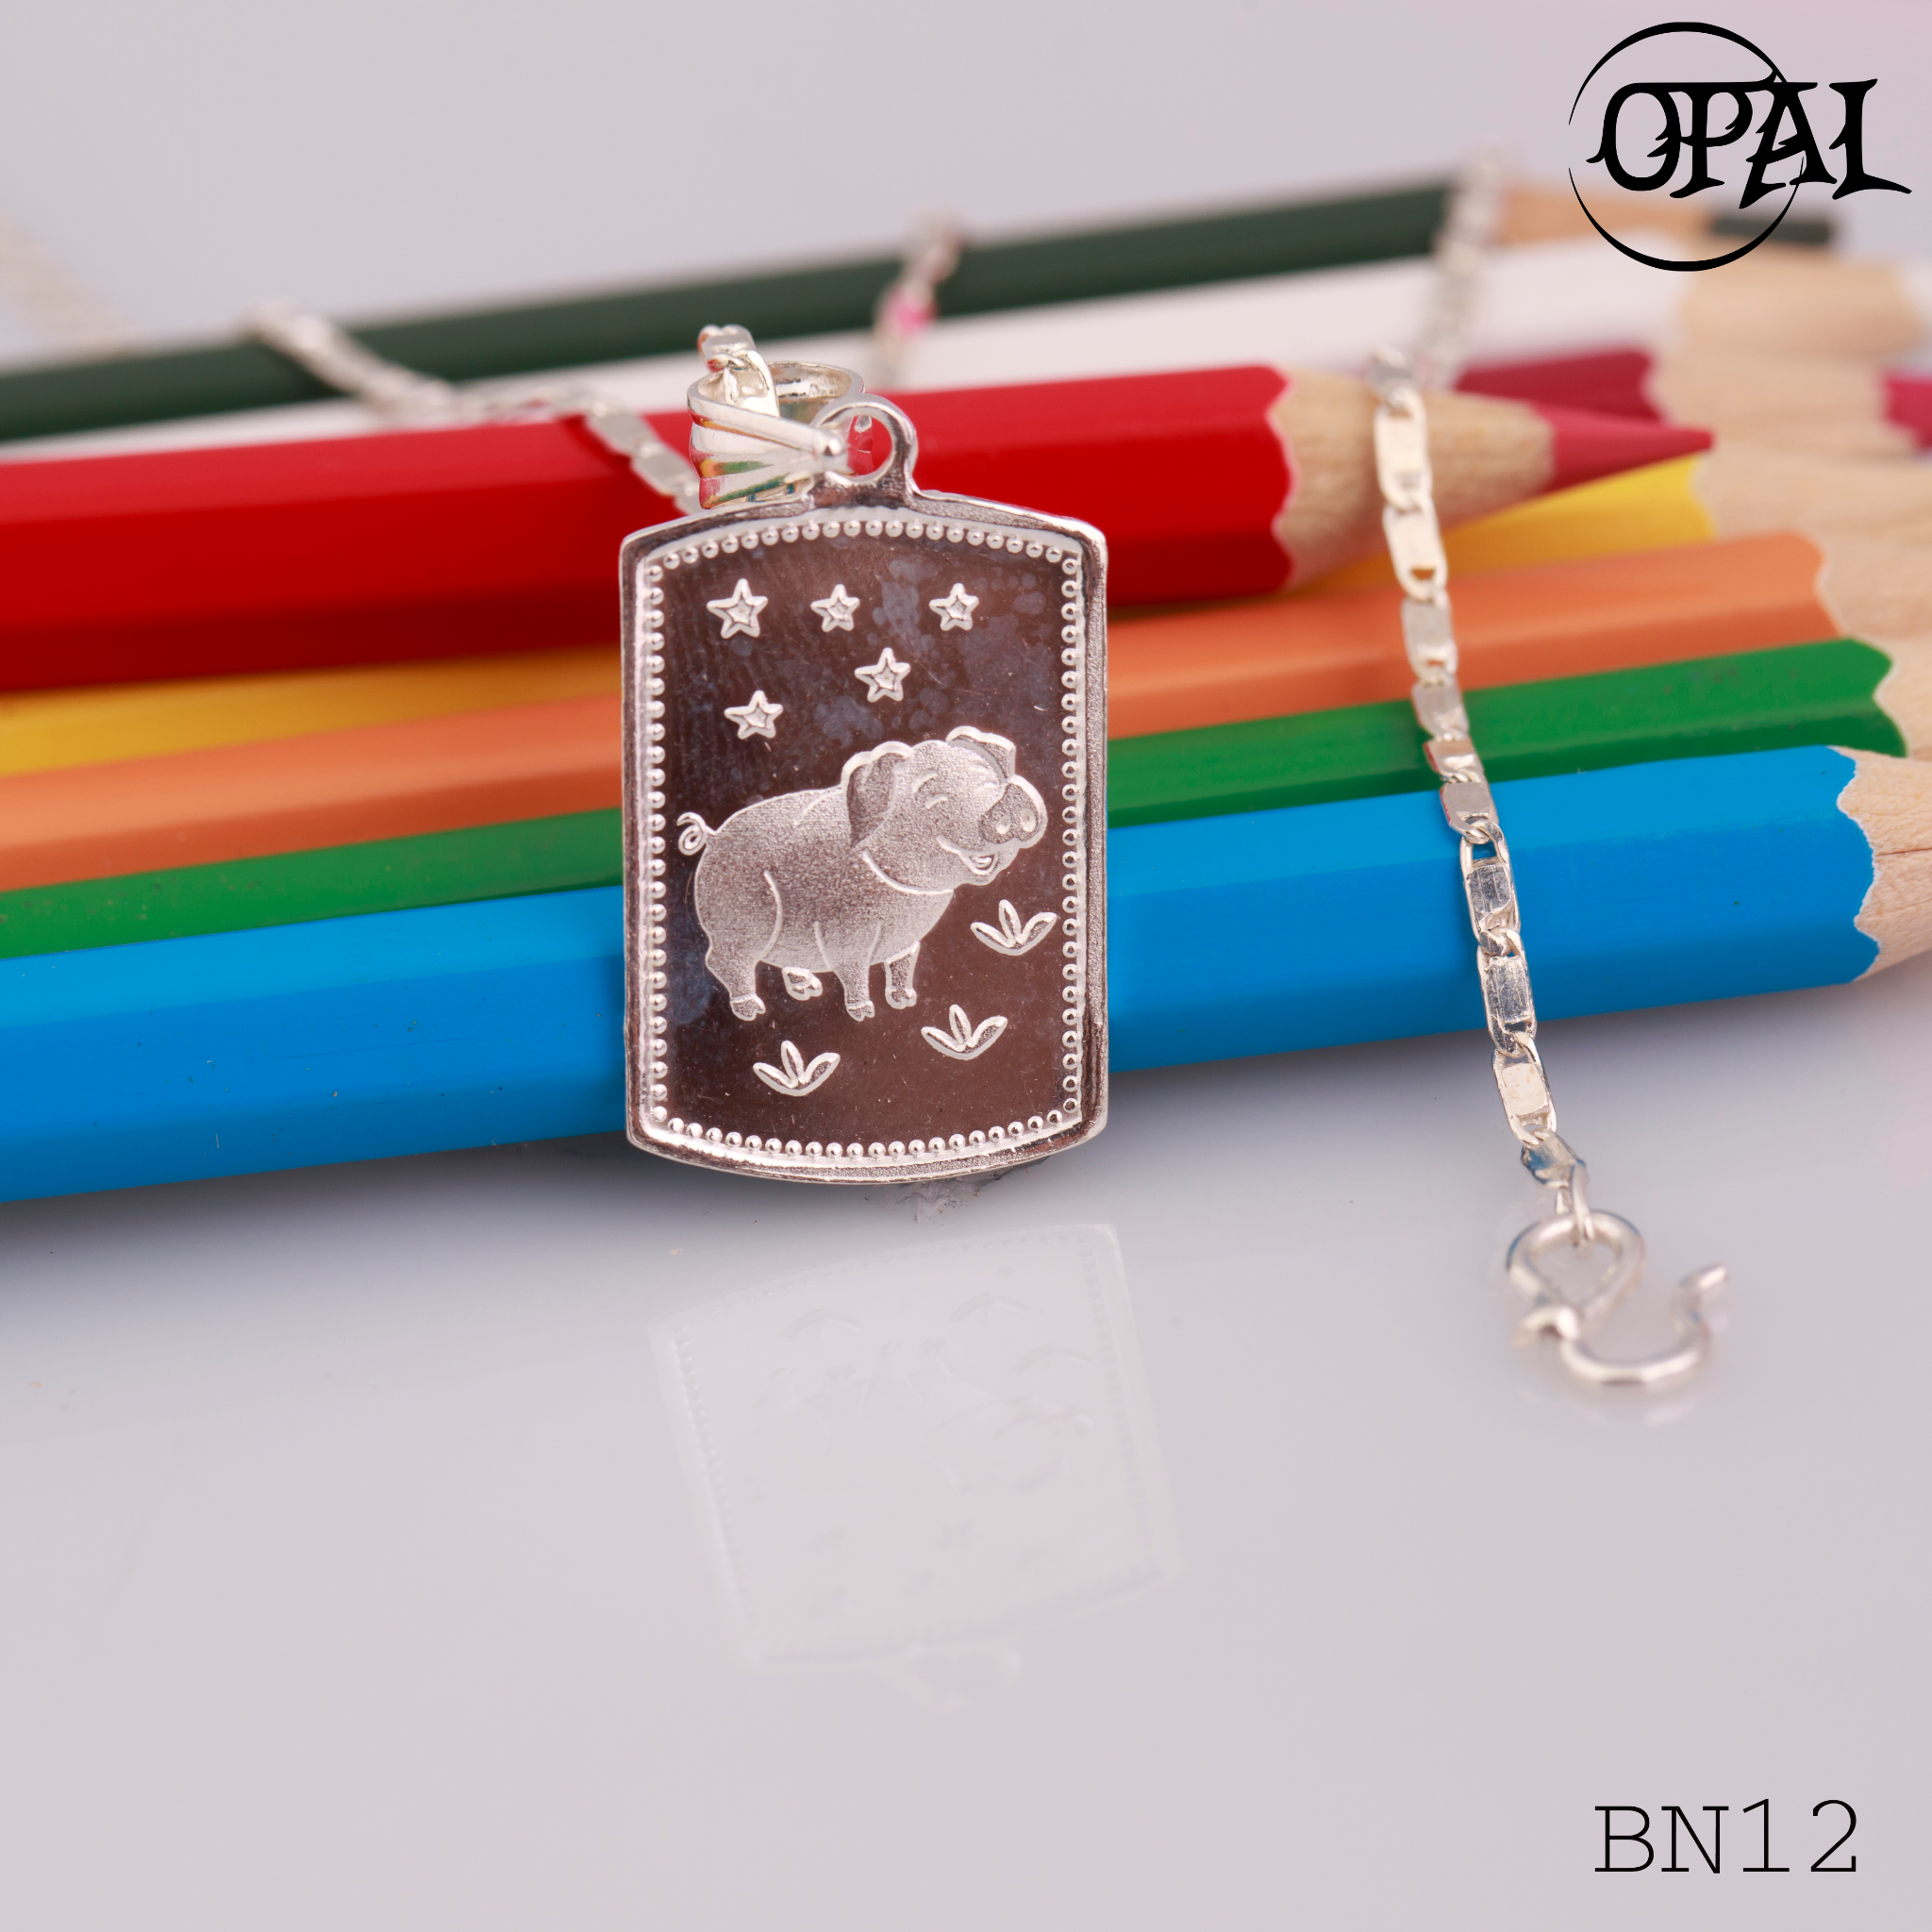  BN01-B12- Dây chuyền bạc con giáp dành cho bé Opal 